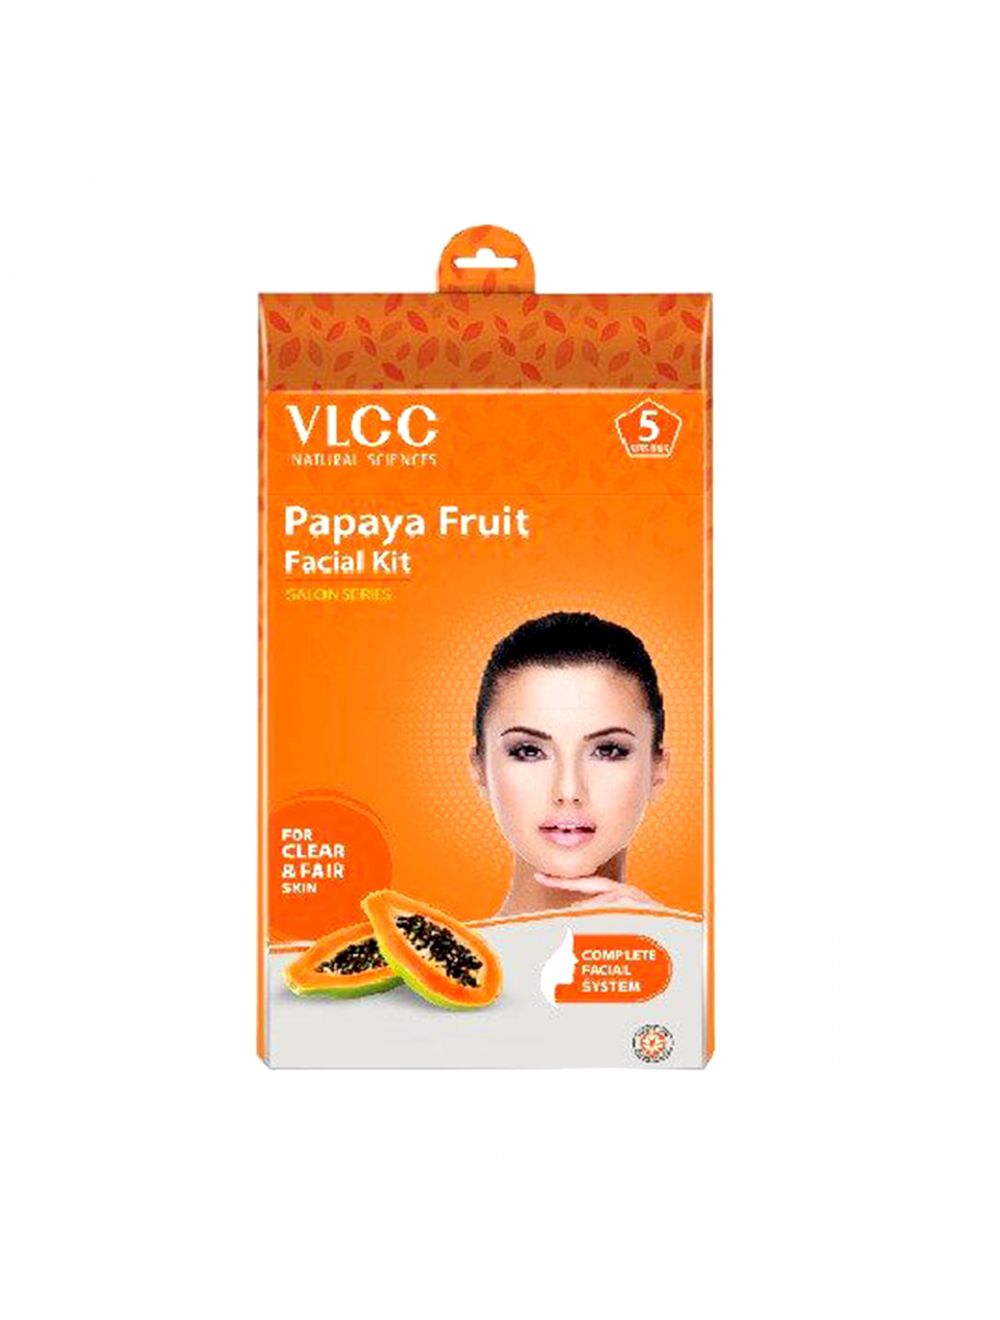 VLCC Papaya Fruit Facial Kit 5 Session (60gm) - Niram